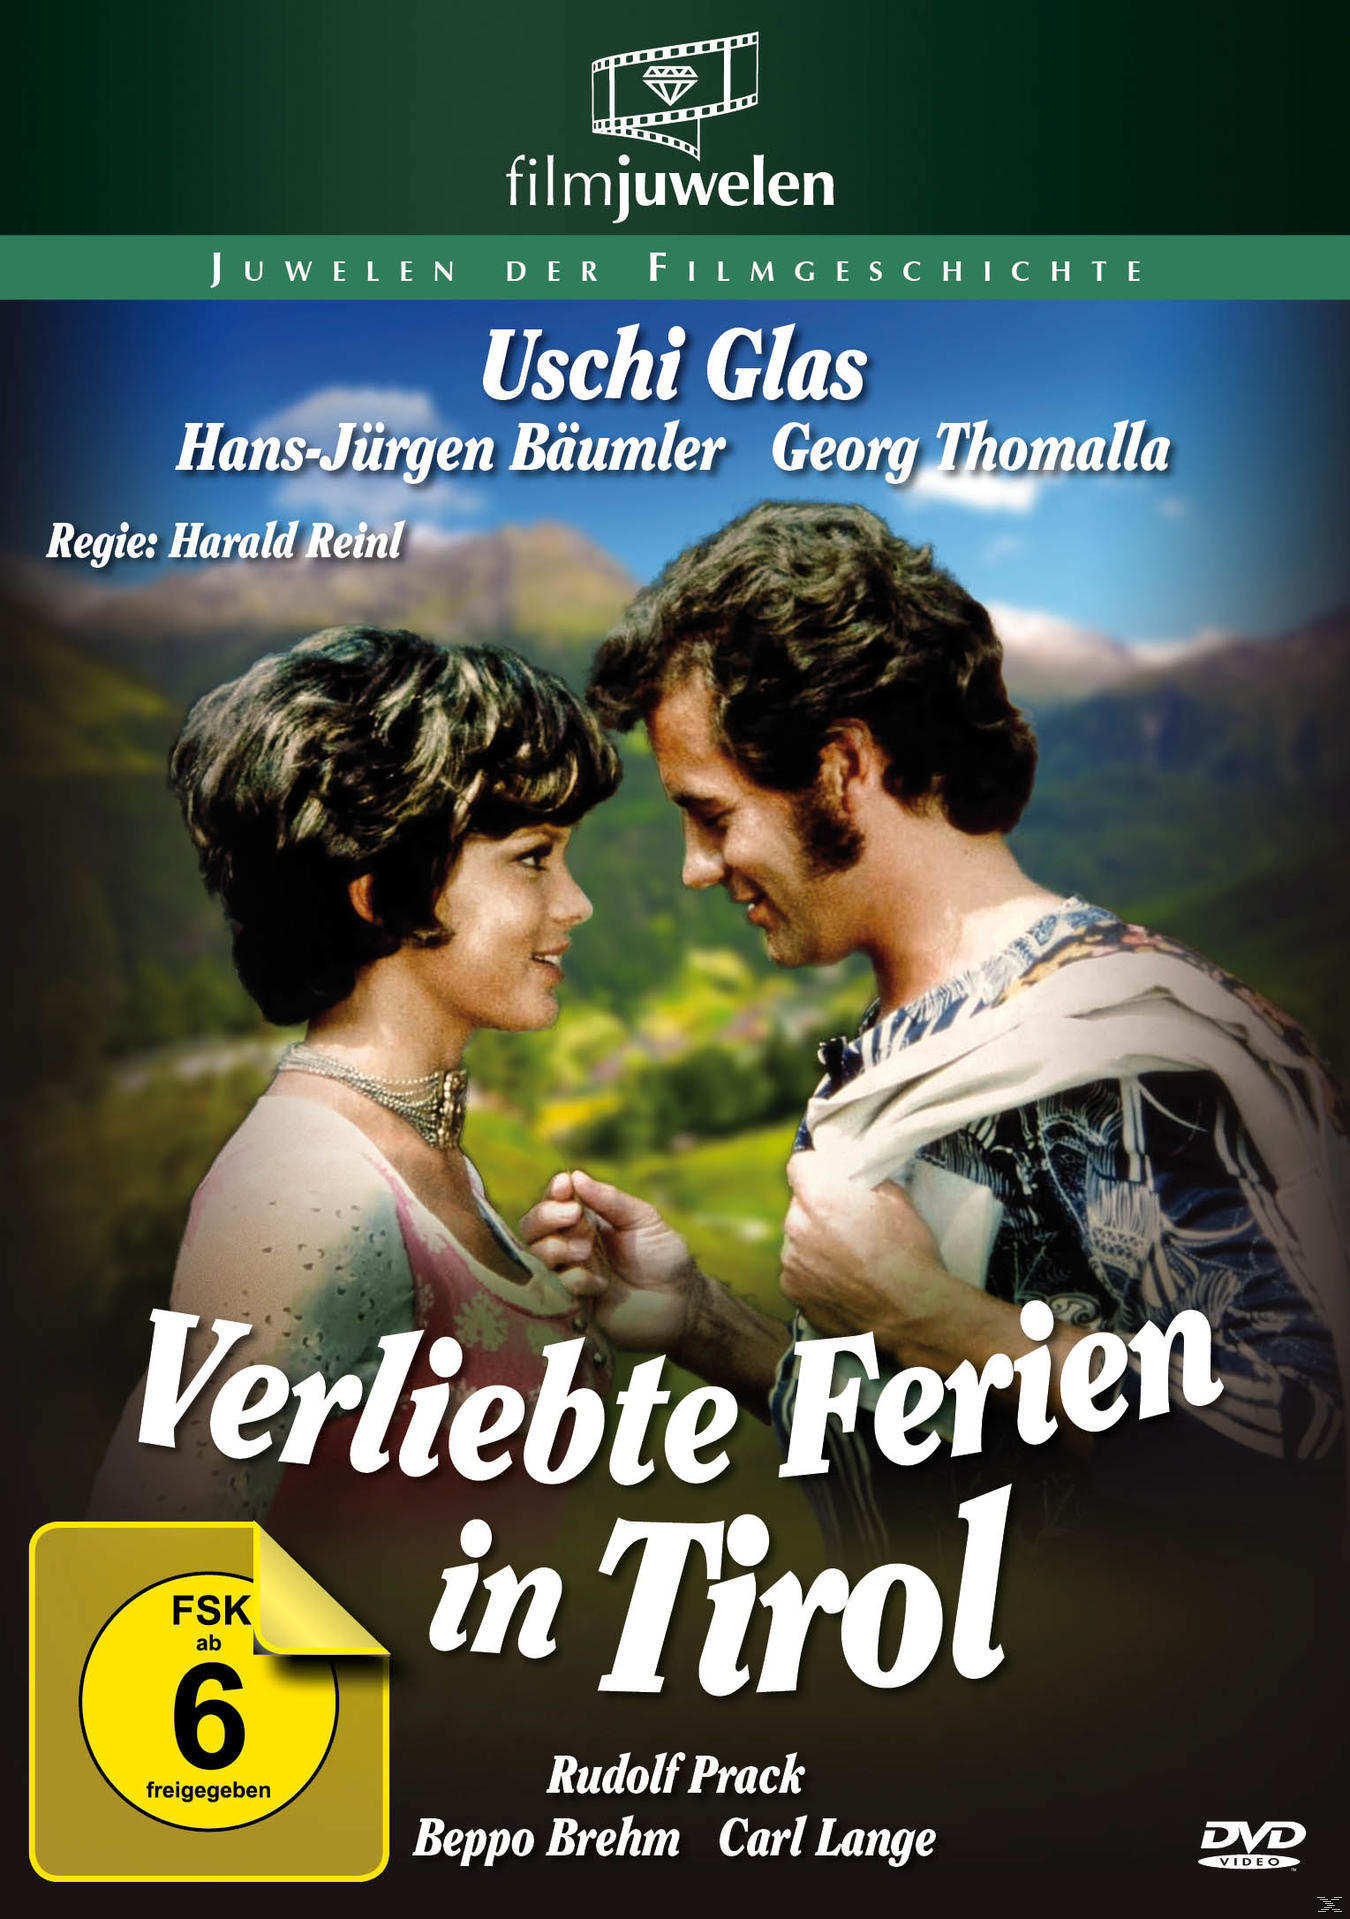 Tirol in DVD Verliebte Ferien